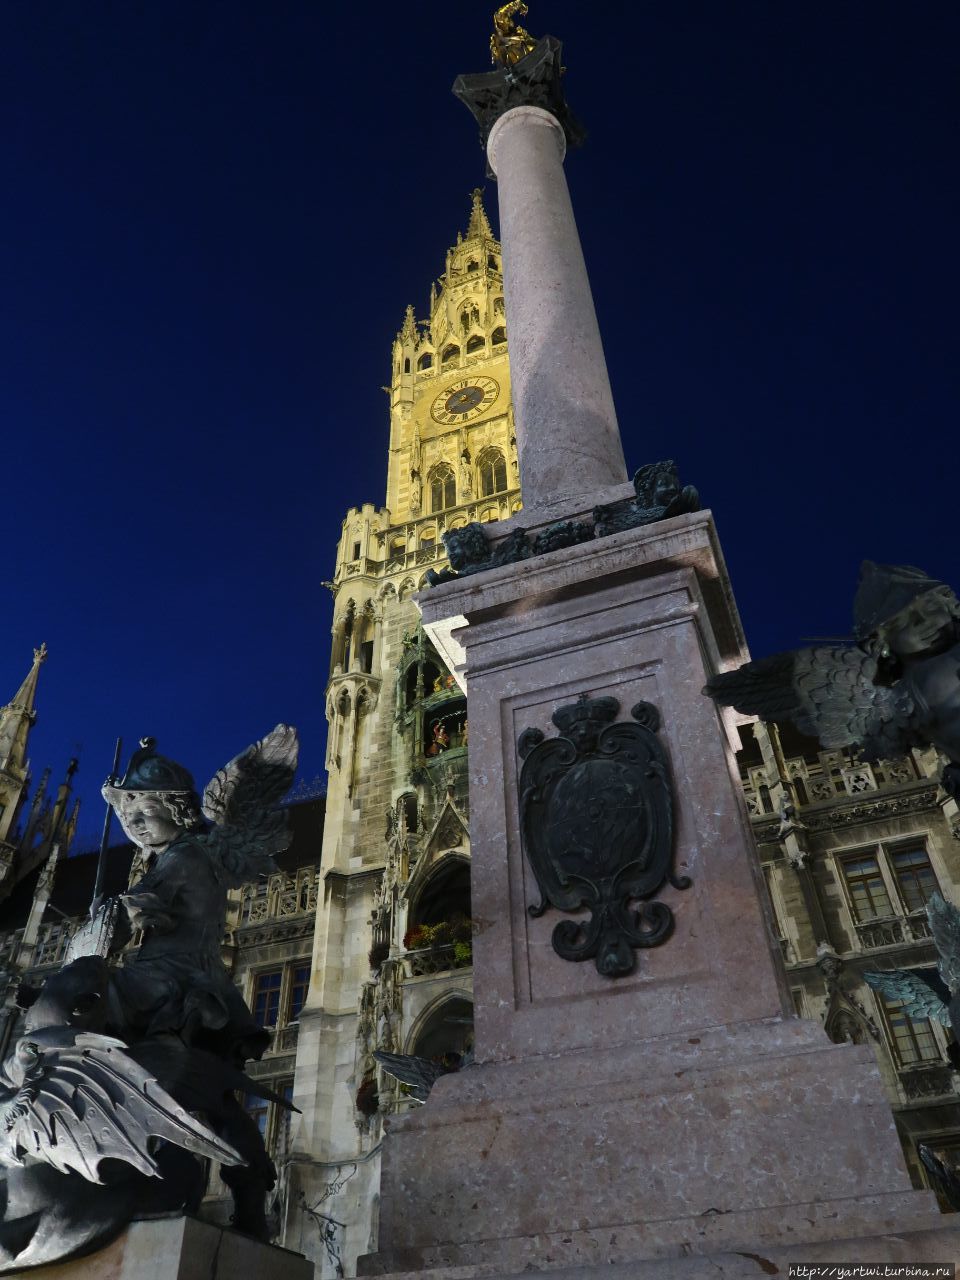 Мариинская колонна, расположенная на площади Мариенплац в Мюнхене, — статуя Святой Девы Марии, установленная на колонне. Мария почитается здесь в качестве покровительницы Баварии. Мюнхен, Германия